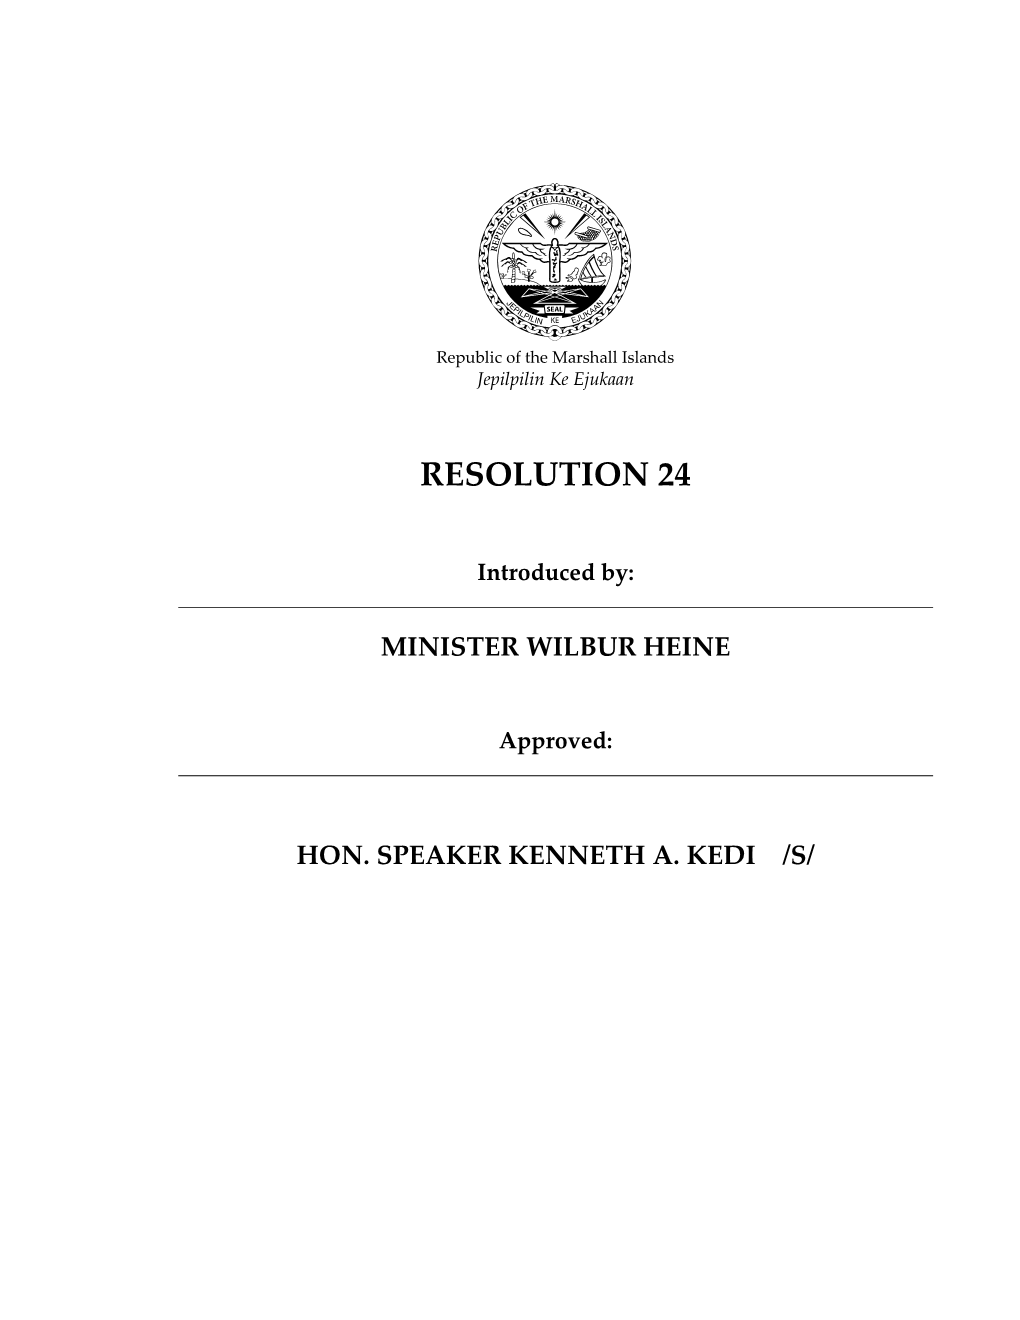 Resolution 24